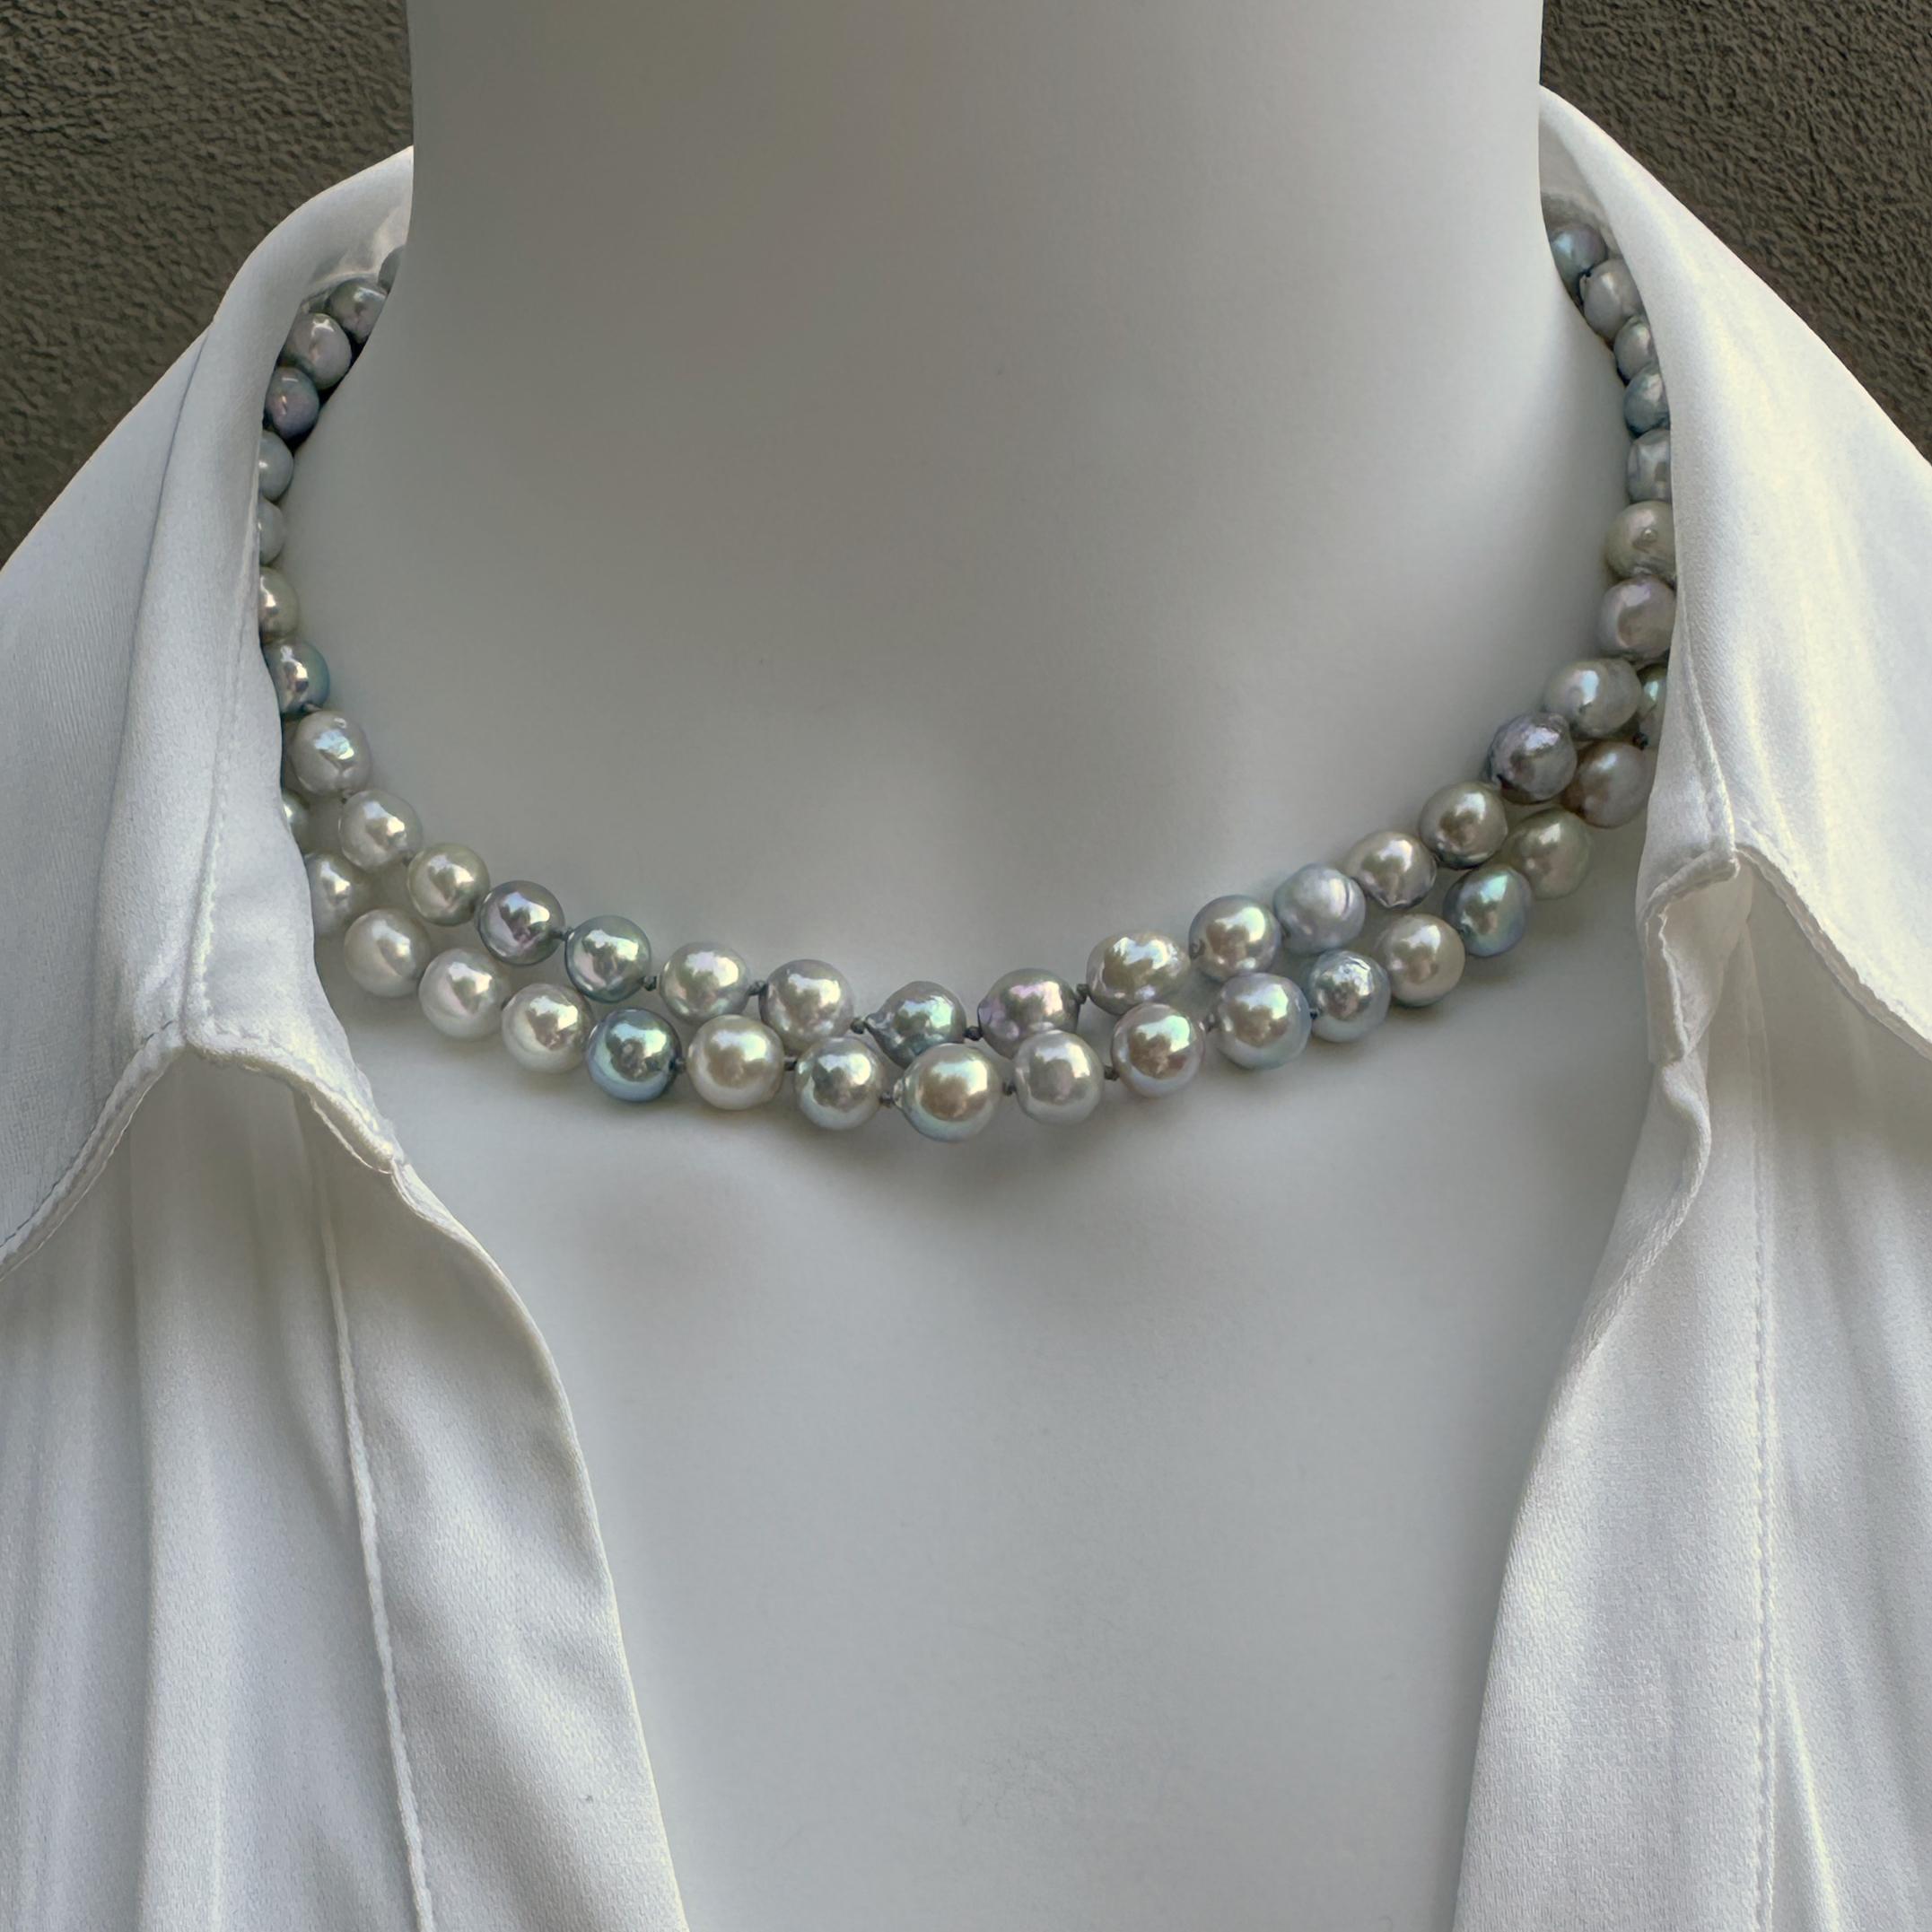 Wir haben diese wunderschönen und unverwechselbaren Perlen auf einer Messe* im Juli 2023 erworben.  Es sind gezüchtete Salzwasser-Akoya-Perlen mit ungewöhnlich hohem Glanz und einer großen Auswahl an eiskalten Farben - wie zwei ausgefallene